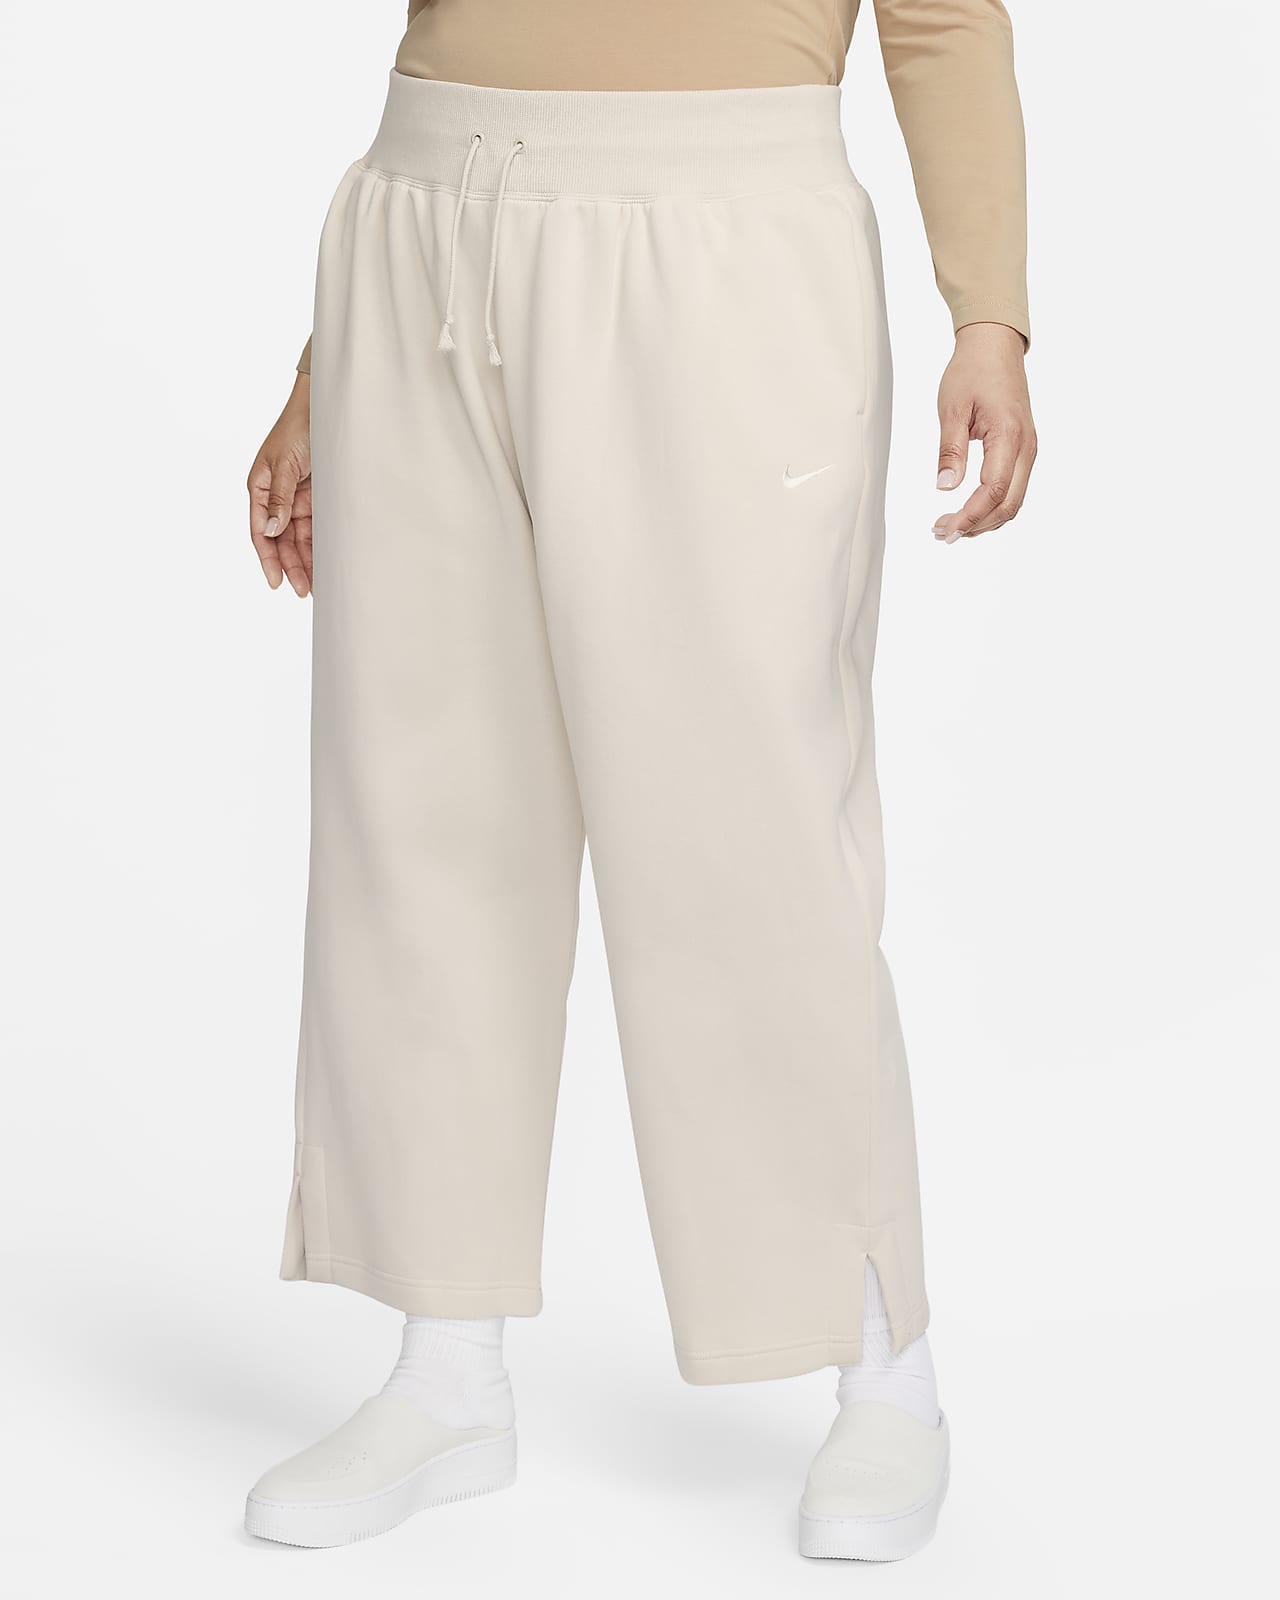 Nike Sportswear Phoenix Fleece-sweatpants med høj talje og brede ben til kvinder (plus size)